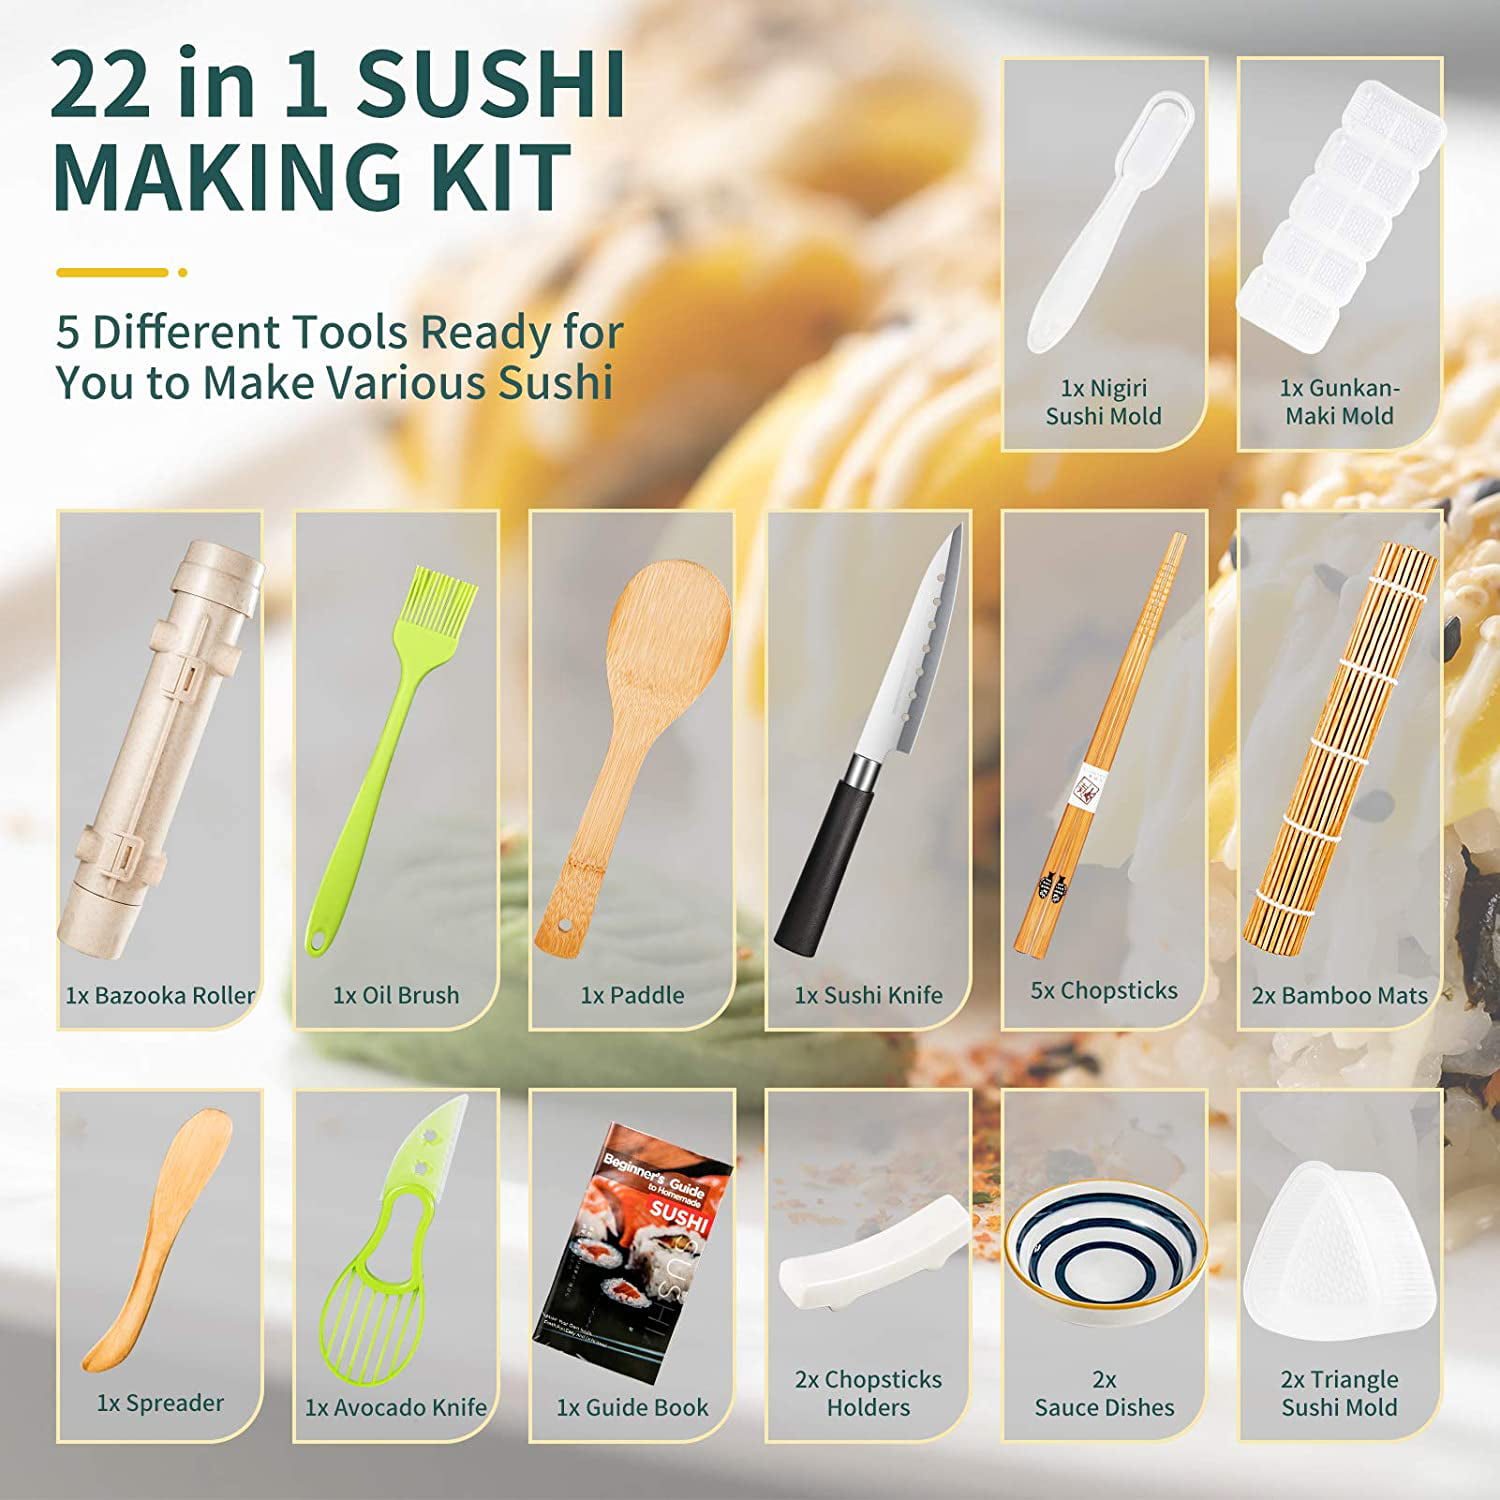 21 in 1 Bamboo Sushi Kit with Sushi Bazooka Avocado Slicer Sushi Knife Spreader ZWCEGND Sushi Making Kit Dish Chopsticks and Holder-DIY Sushi Bazooka Kit Bamboo Sushi Mat Nigiri Mold Paddle